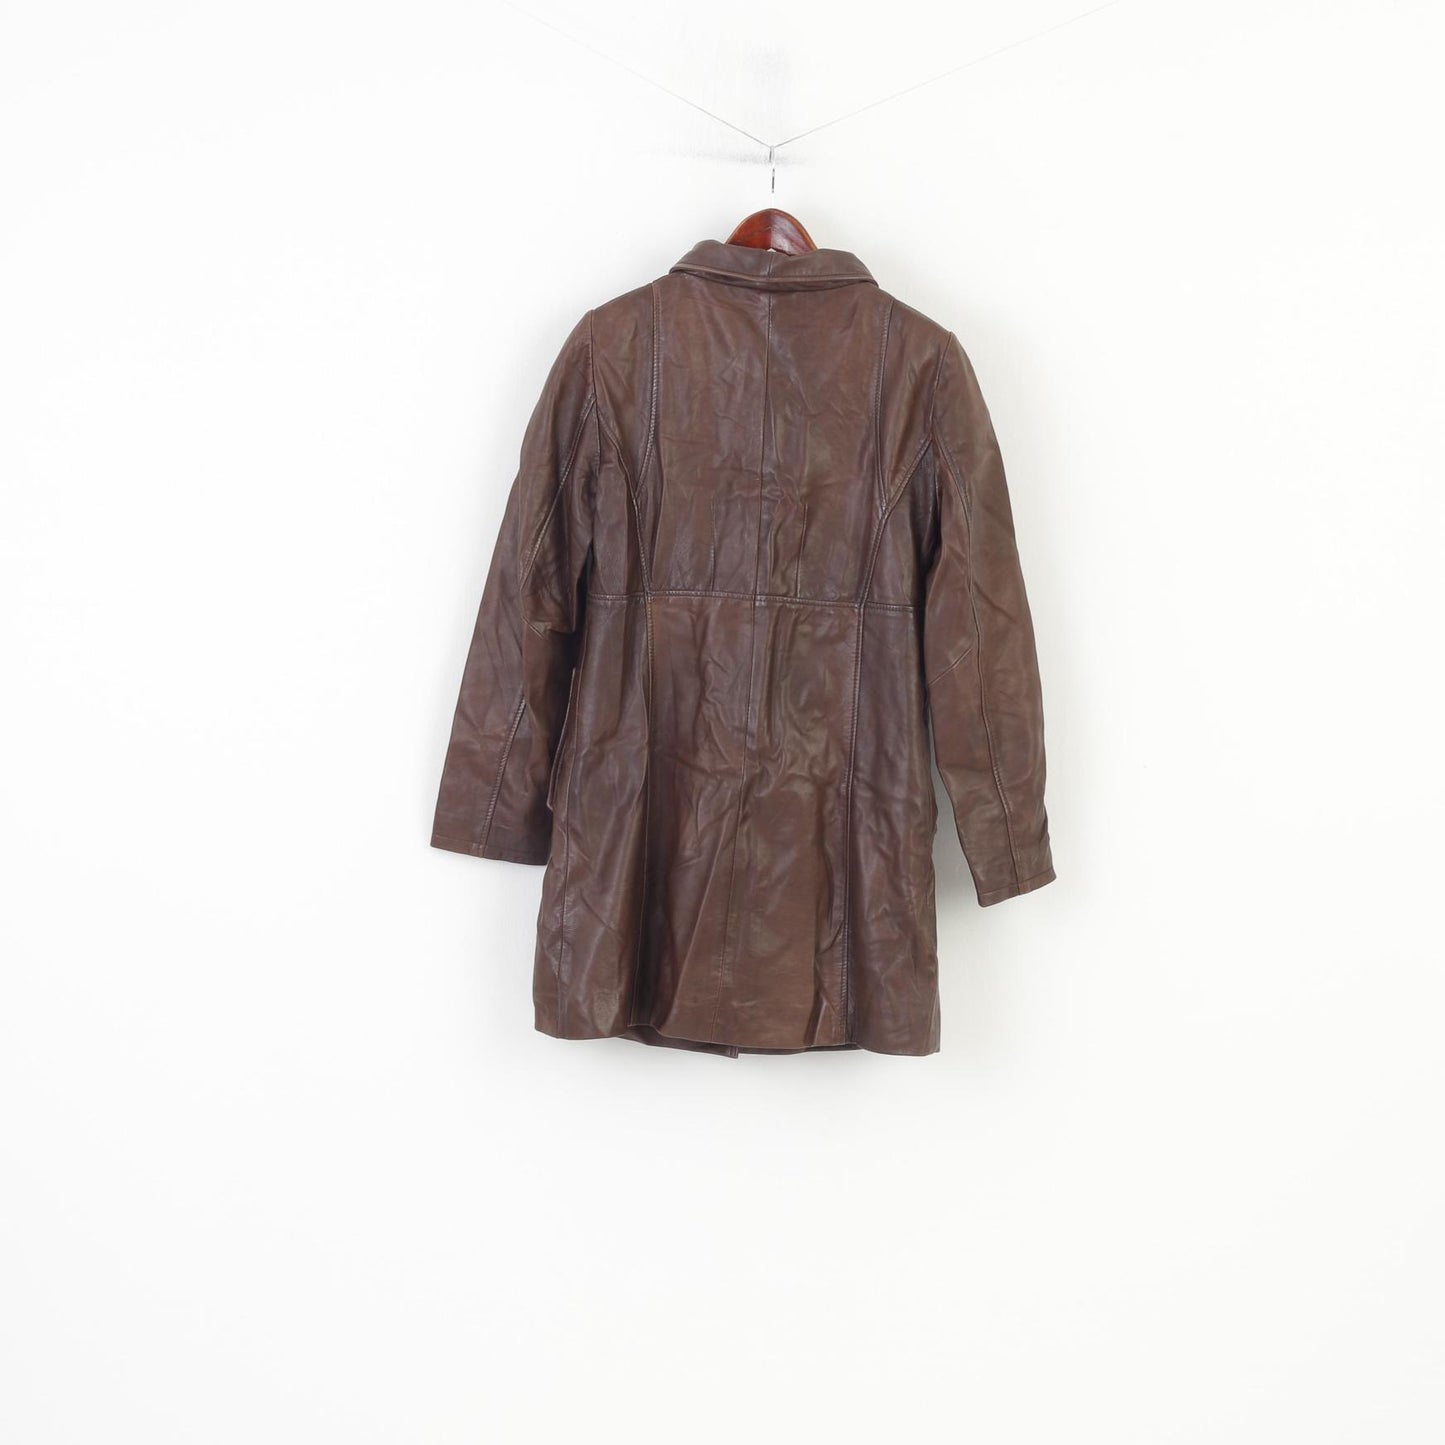 Aleksander Of Norway Women 40 M Coat Jacket Dark Brown Leather Single Breasted Vintage Collar Top